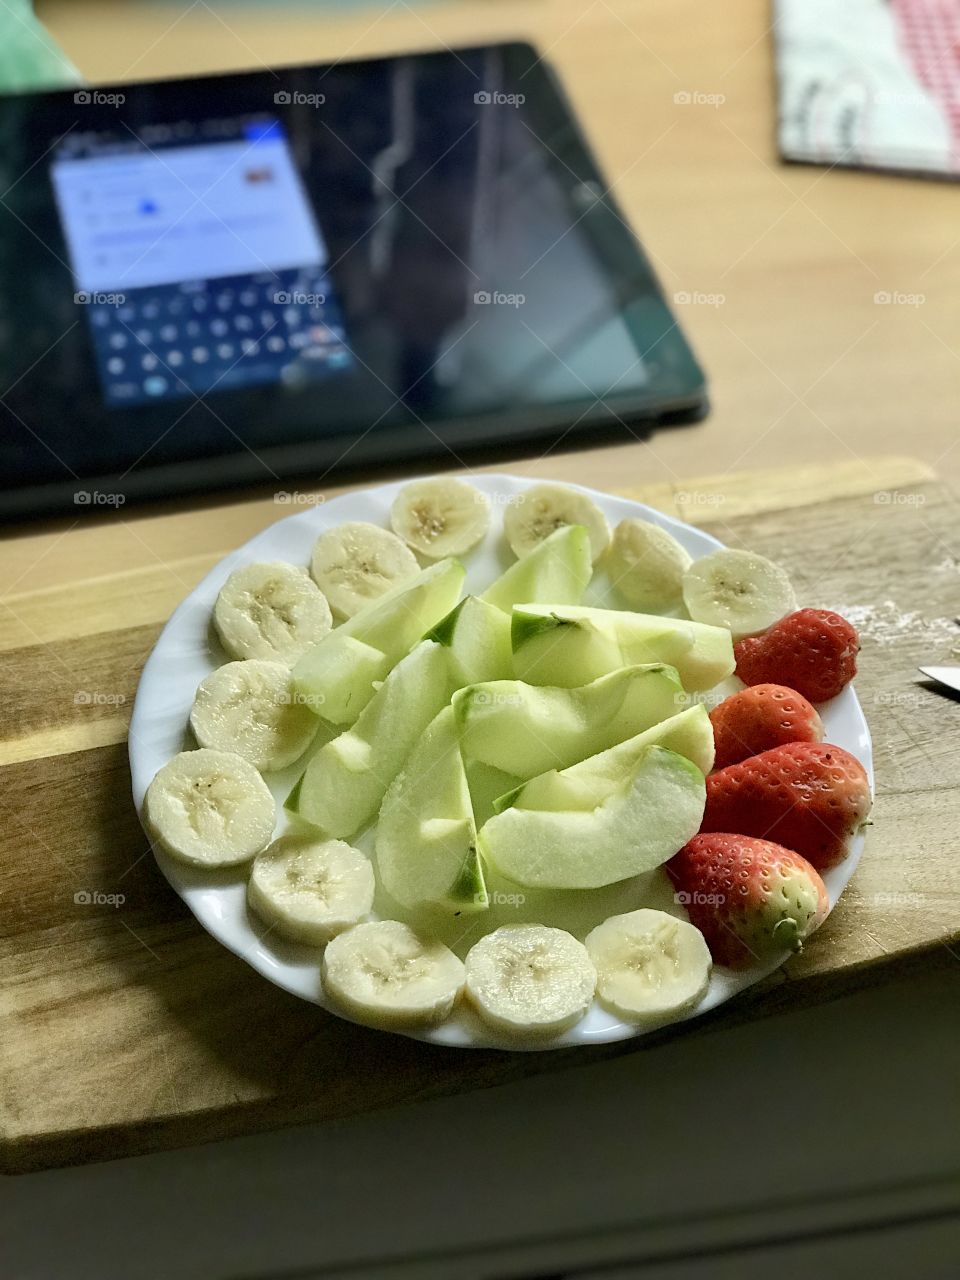 Fruit snacks